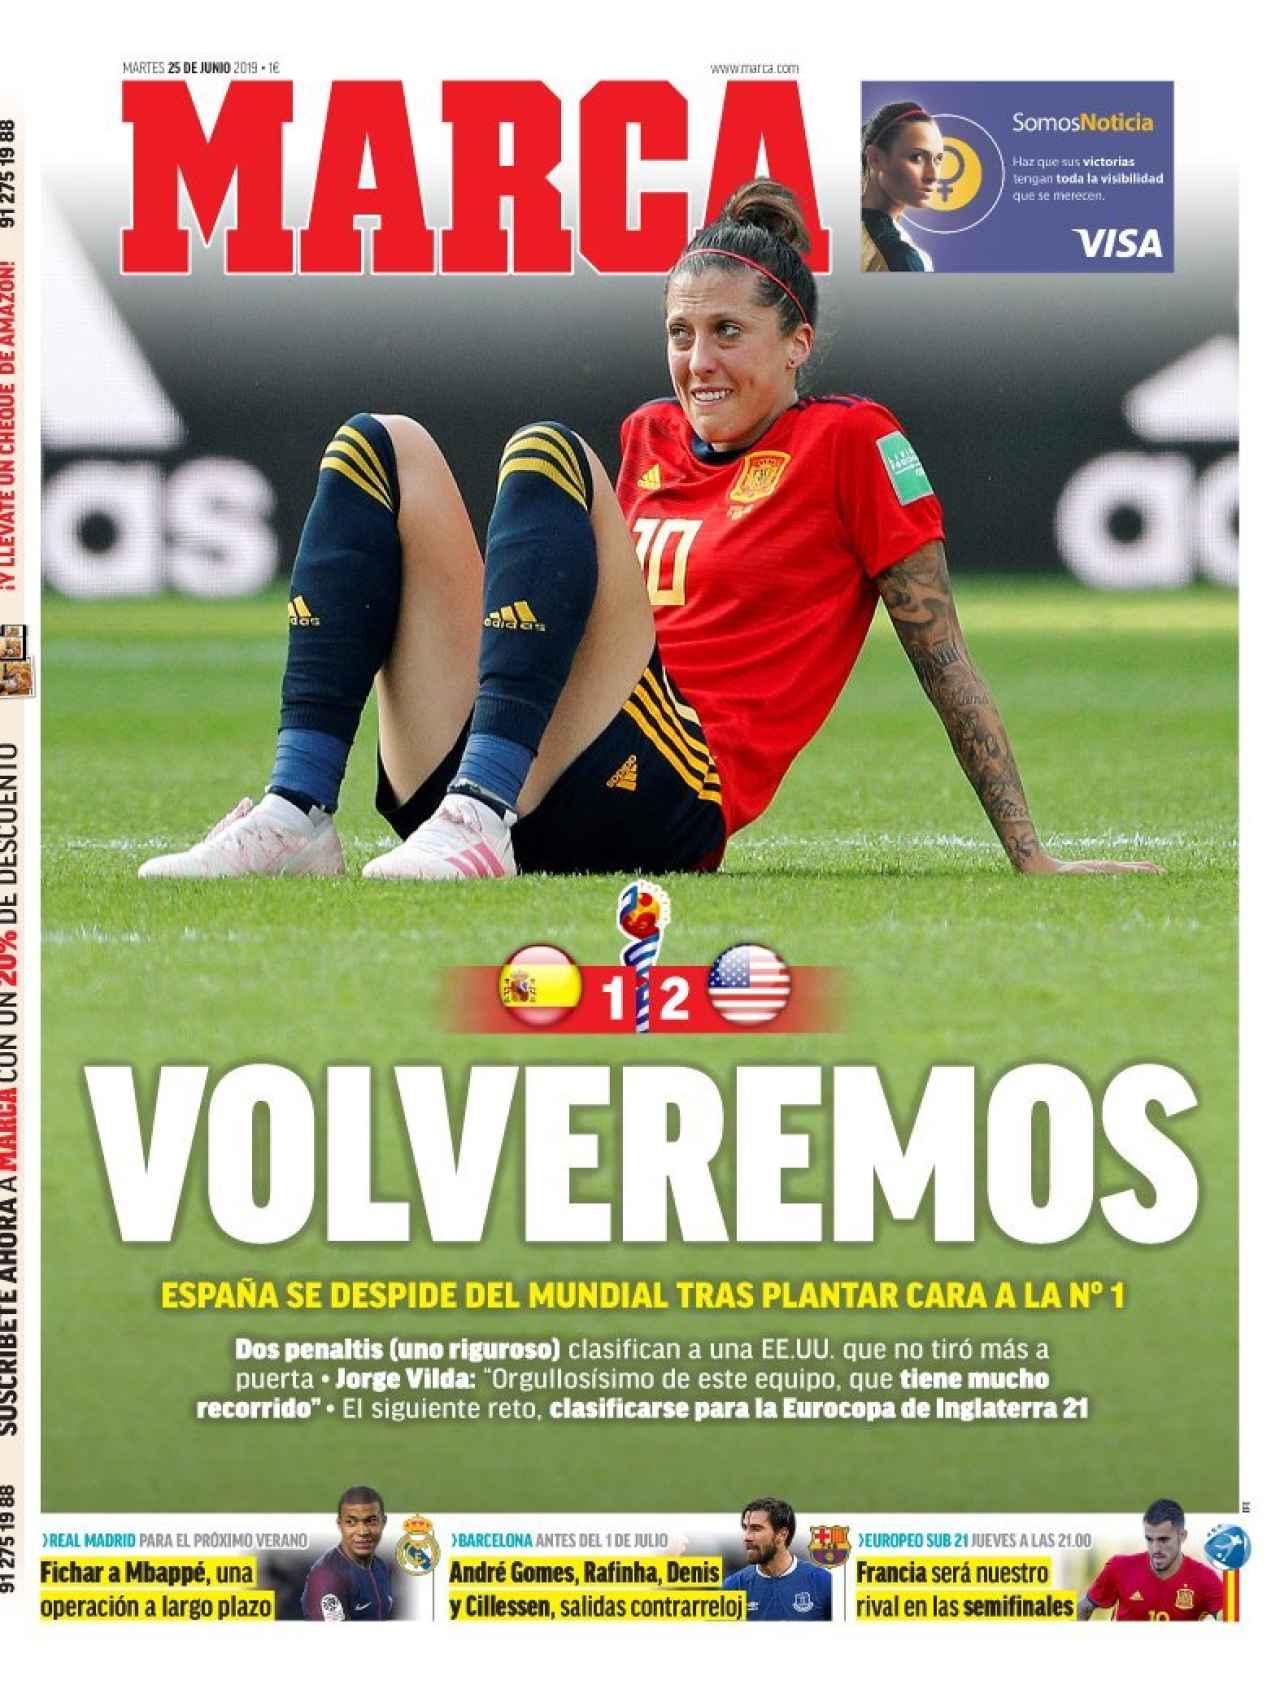 La portada del diario MARCA (25/06/2019)